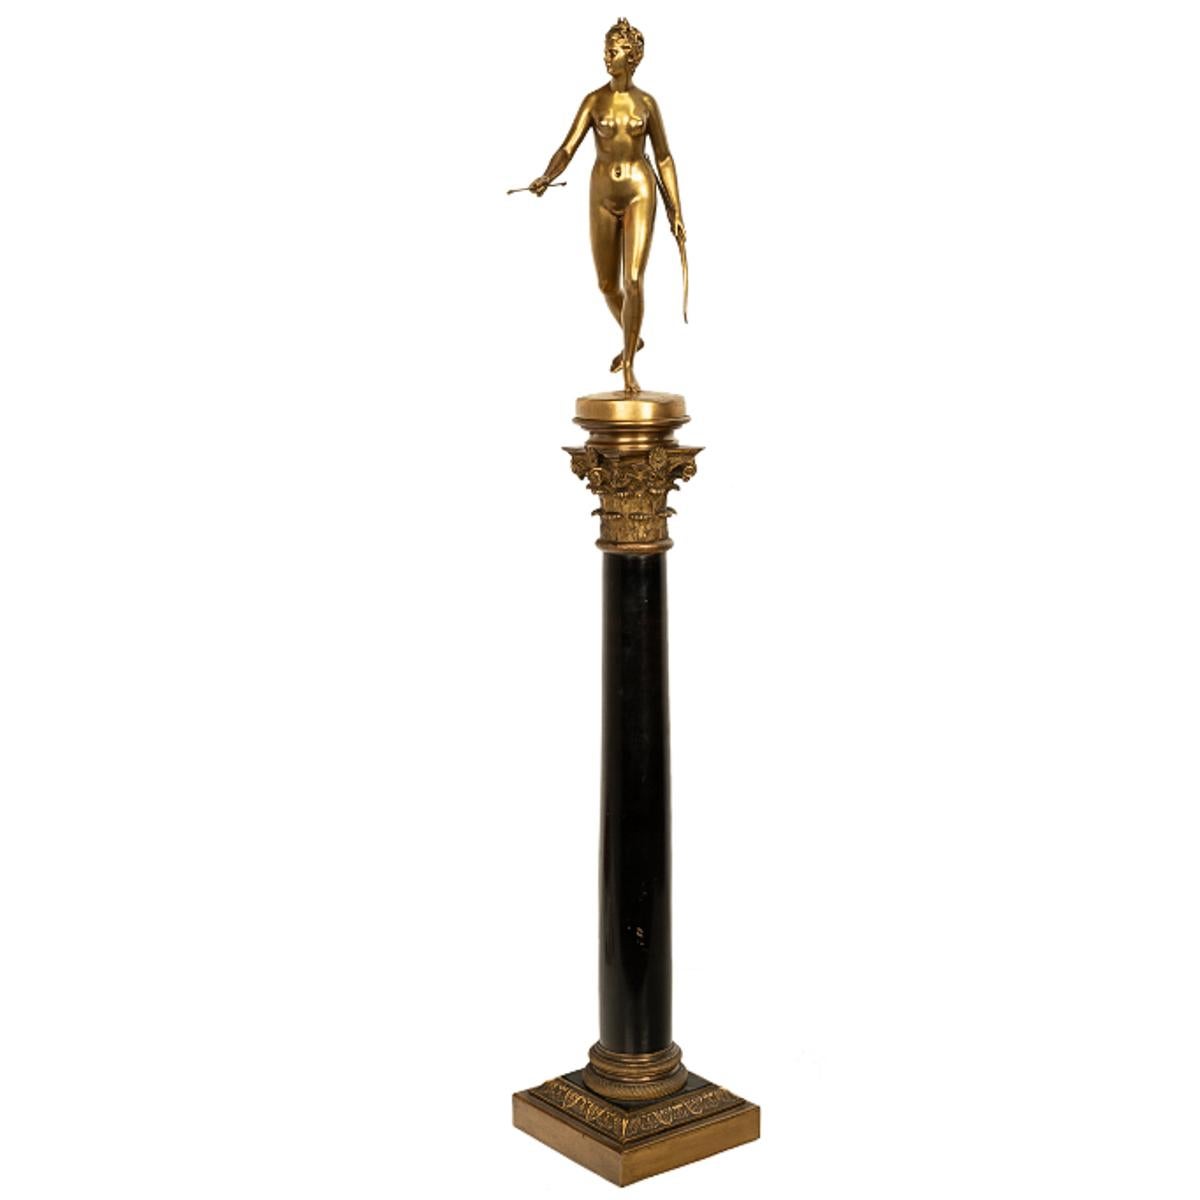 Ancienne statue française du Grand Tour en bronze doré sur colonne Diane la chasseuse 1838 - Sculpture de Ferdinand Barbedienne